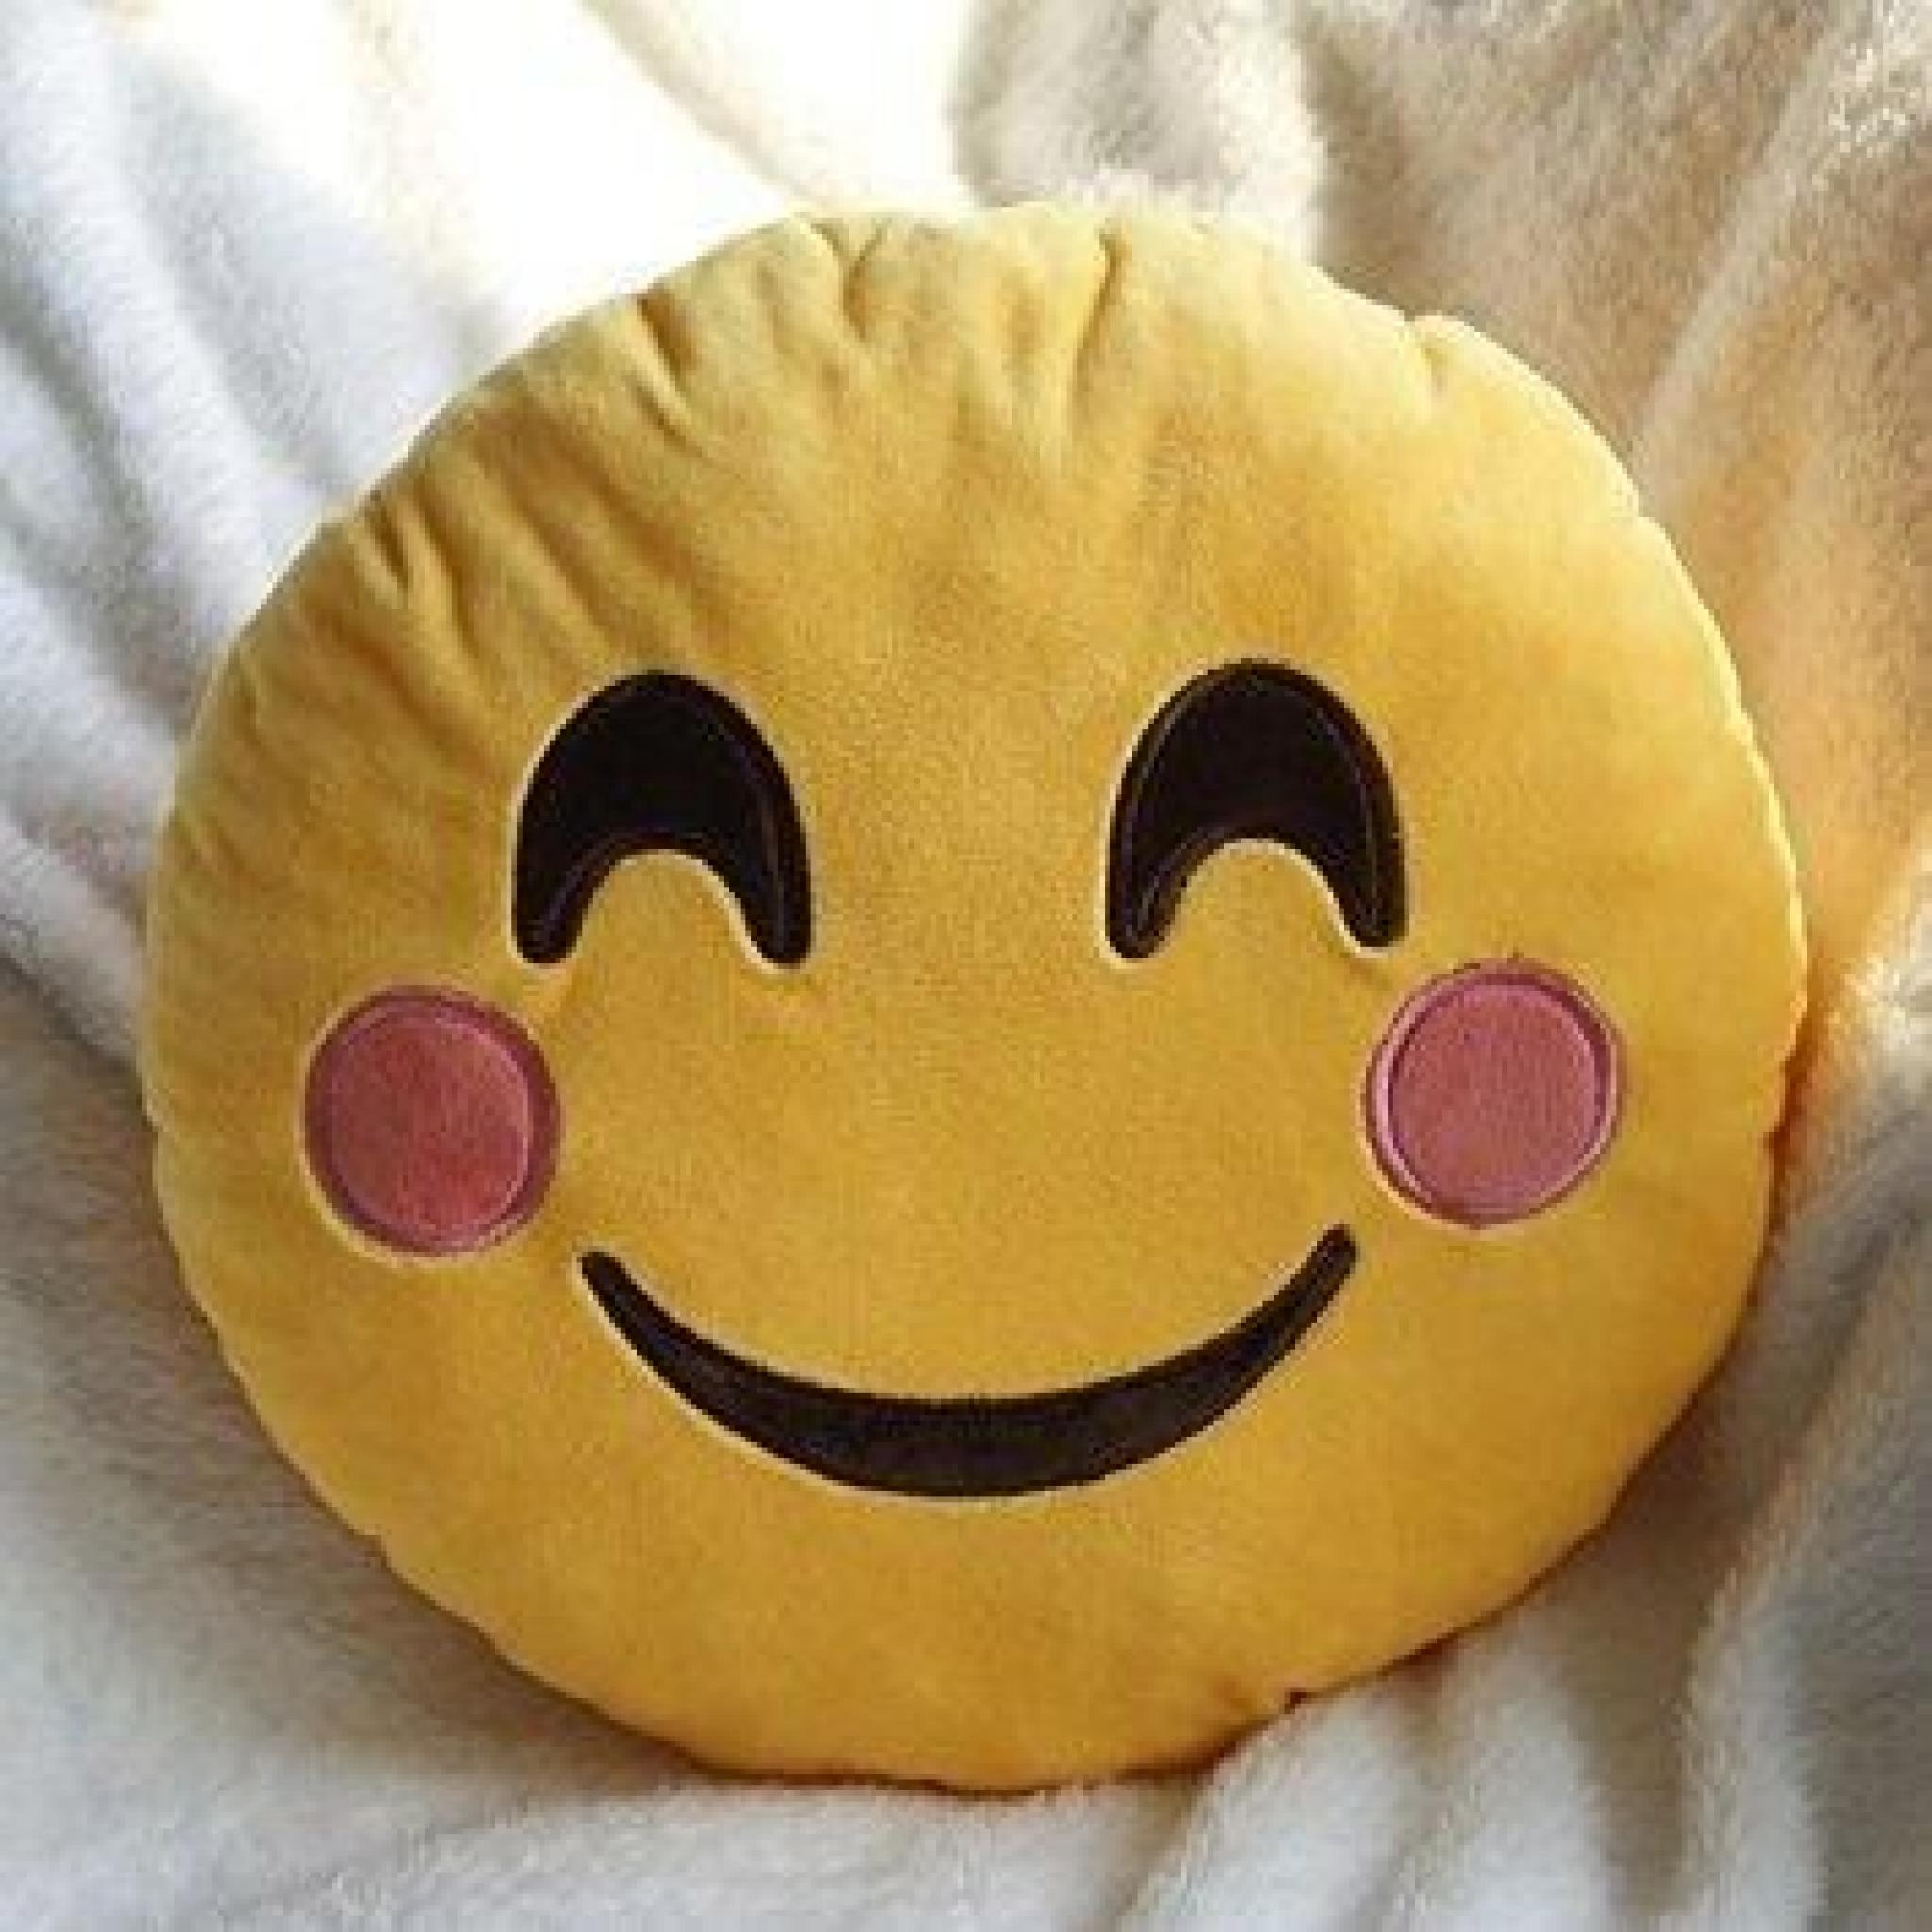 moji sourir Emoticon rond coussin oreiller oreiller d'émotion mignon